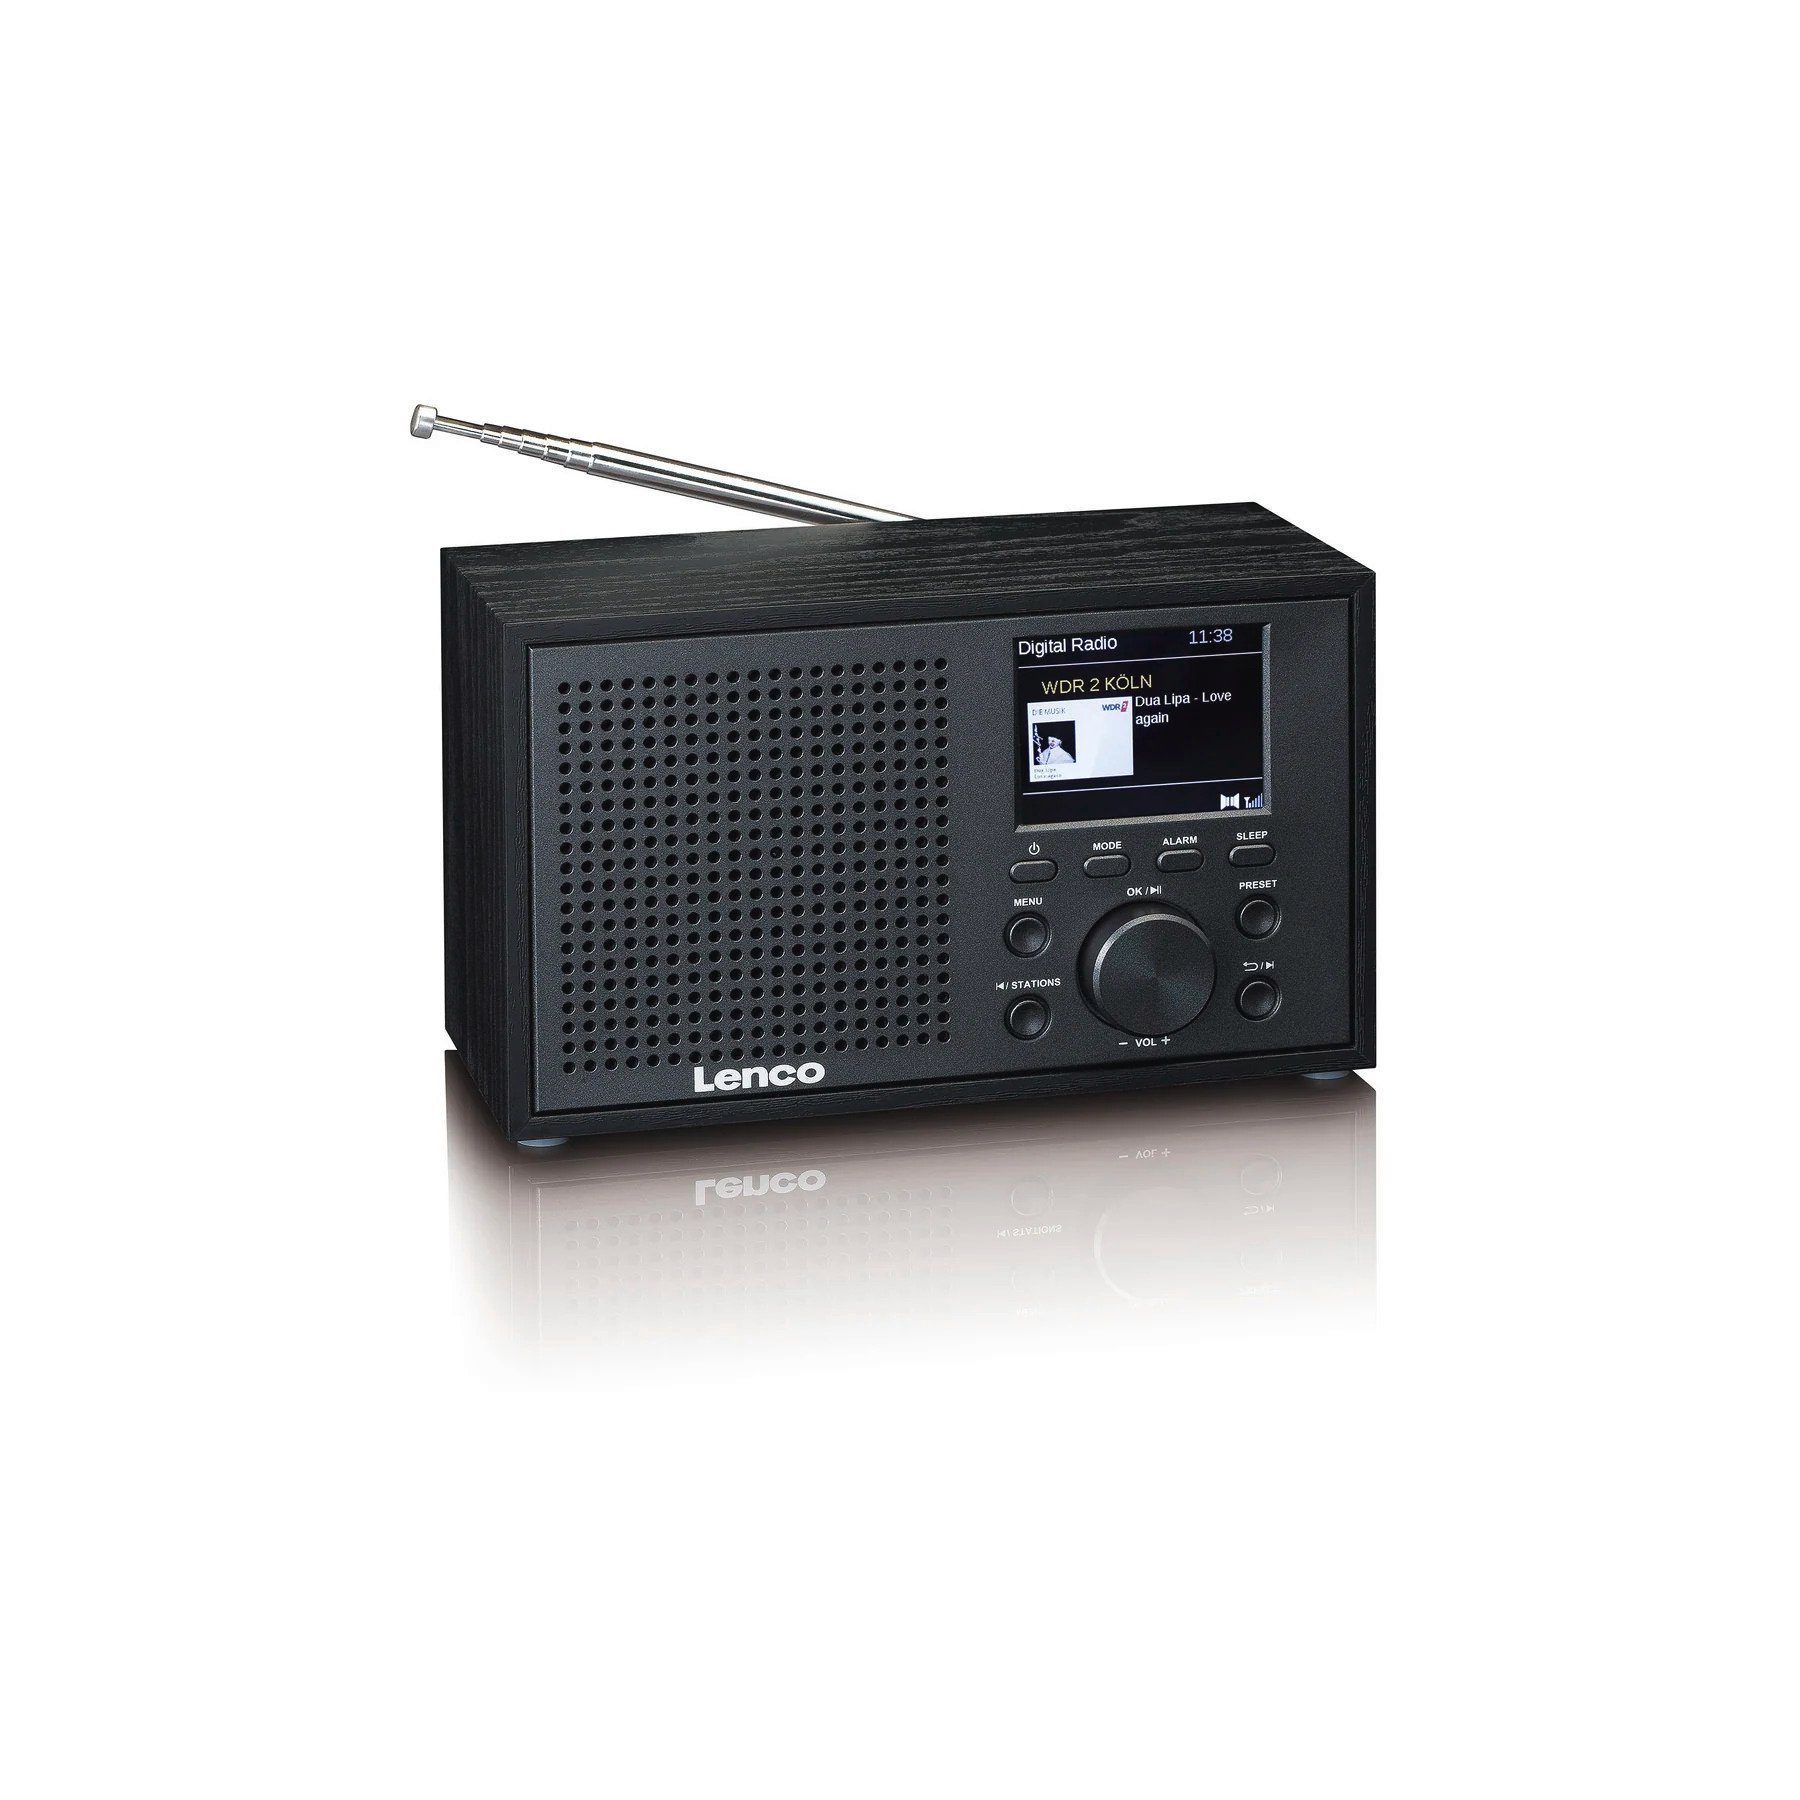 (DAB) mit Lenco (DAB), (Digitalradio 3 Radio W) DAR-017 DAB+/FM Schwarz Digitalradio Bluetooth